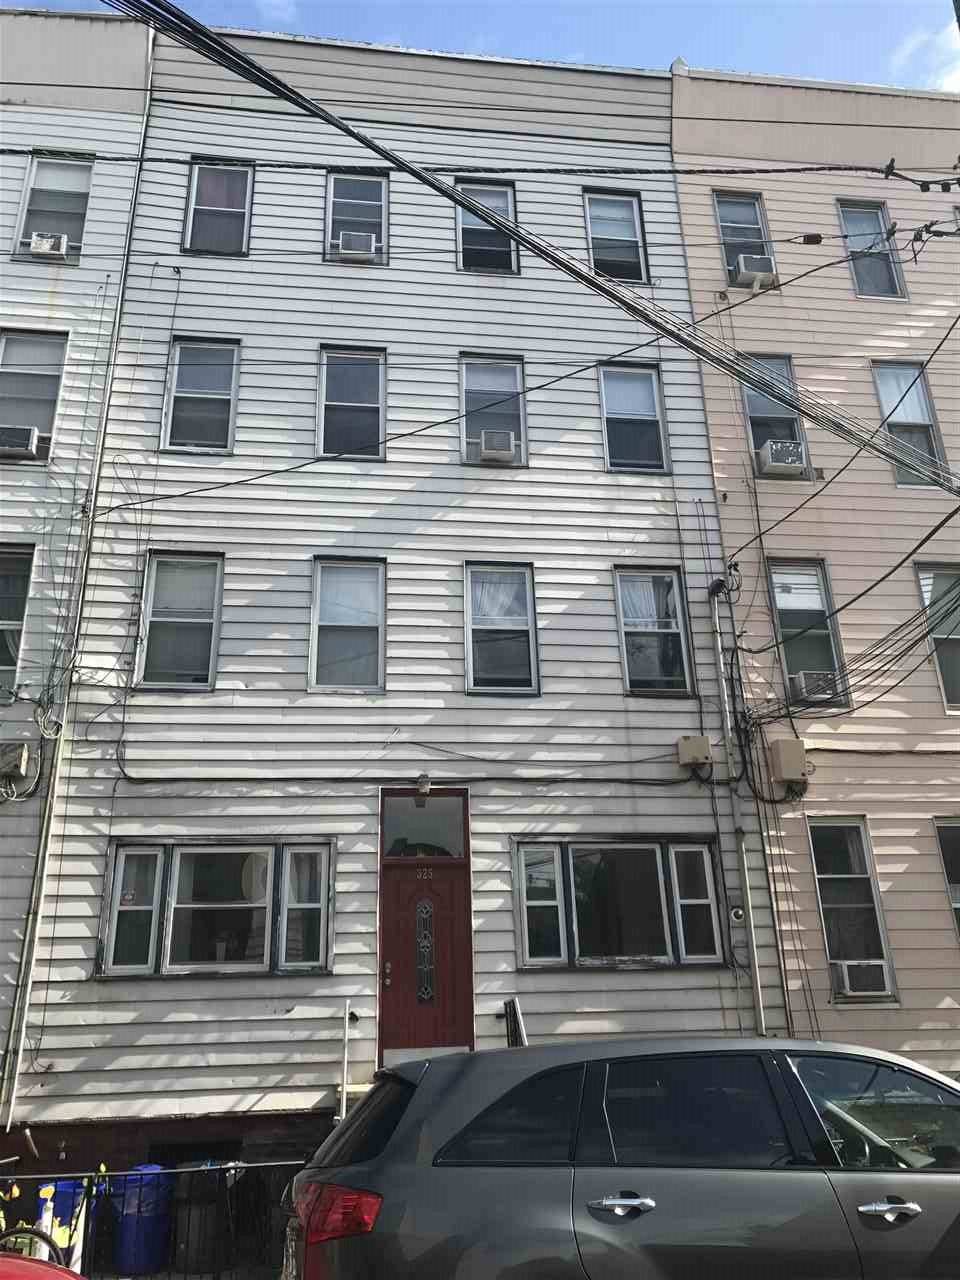 Great 1 bedroom apartment in downtown Hoboken - 1 BR Hoboken New Jersey